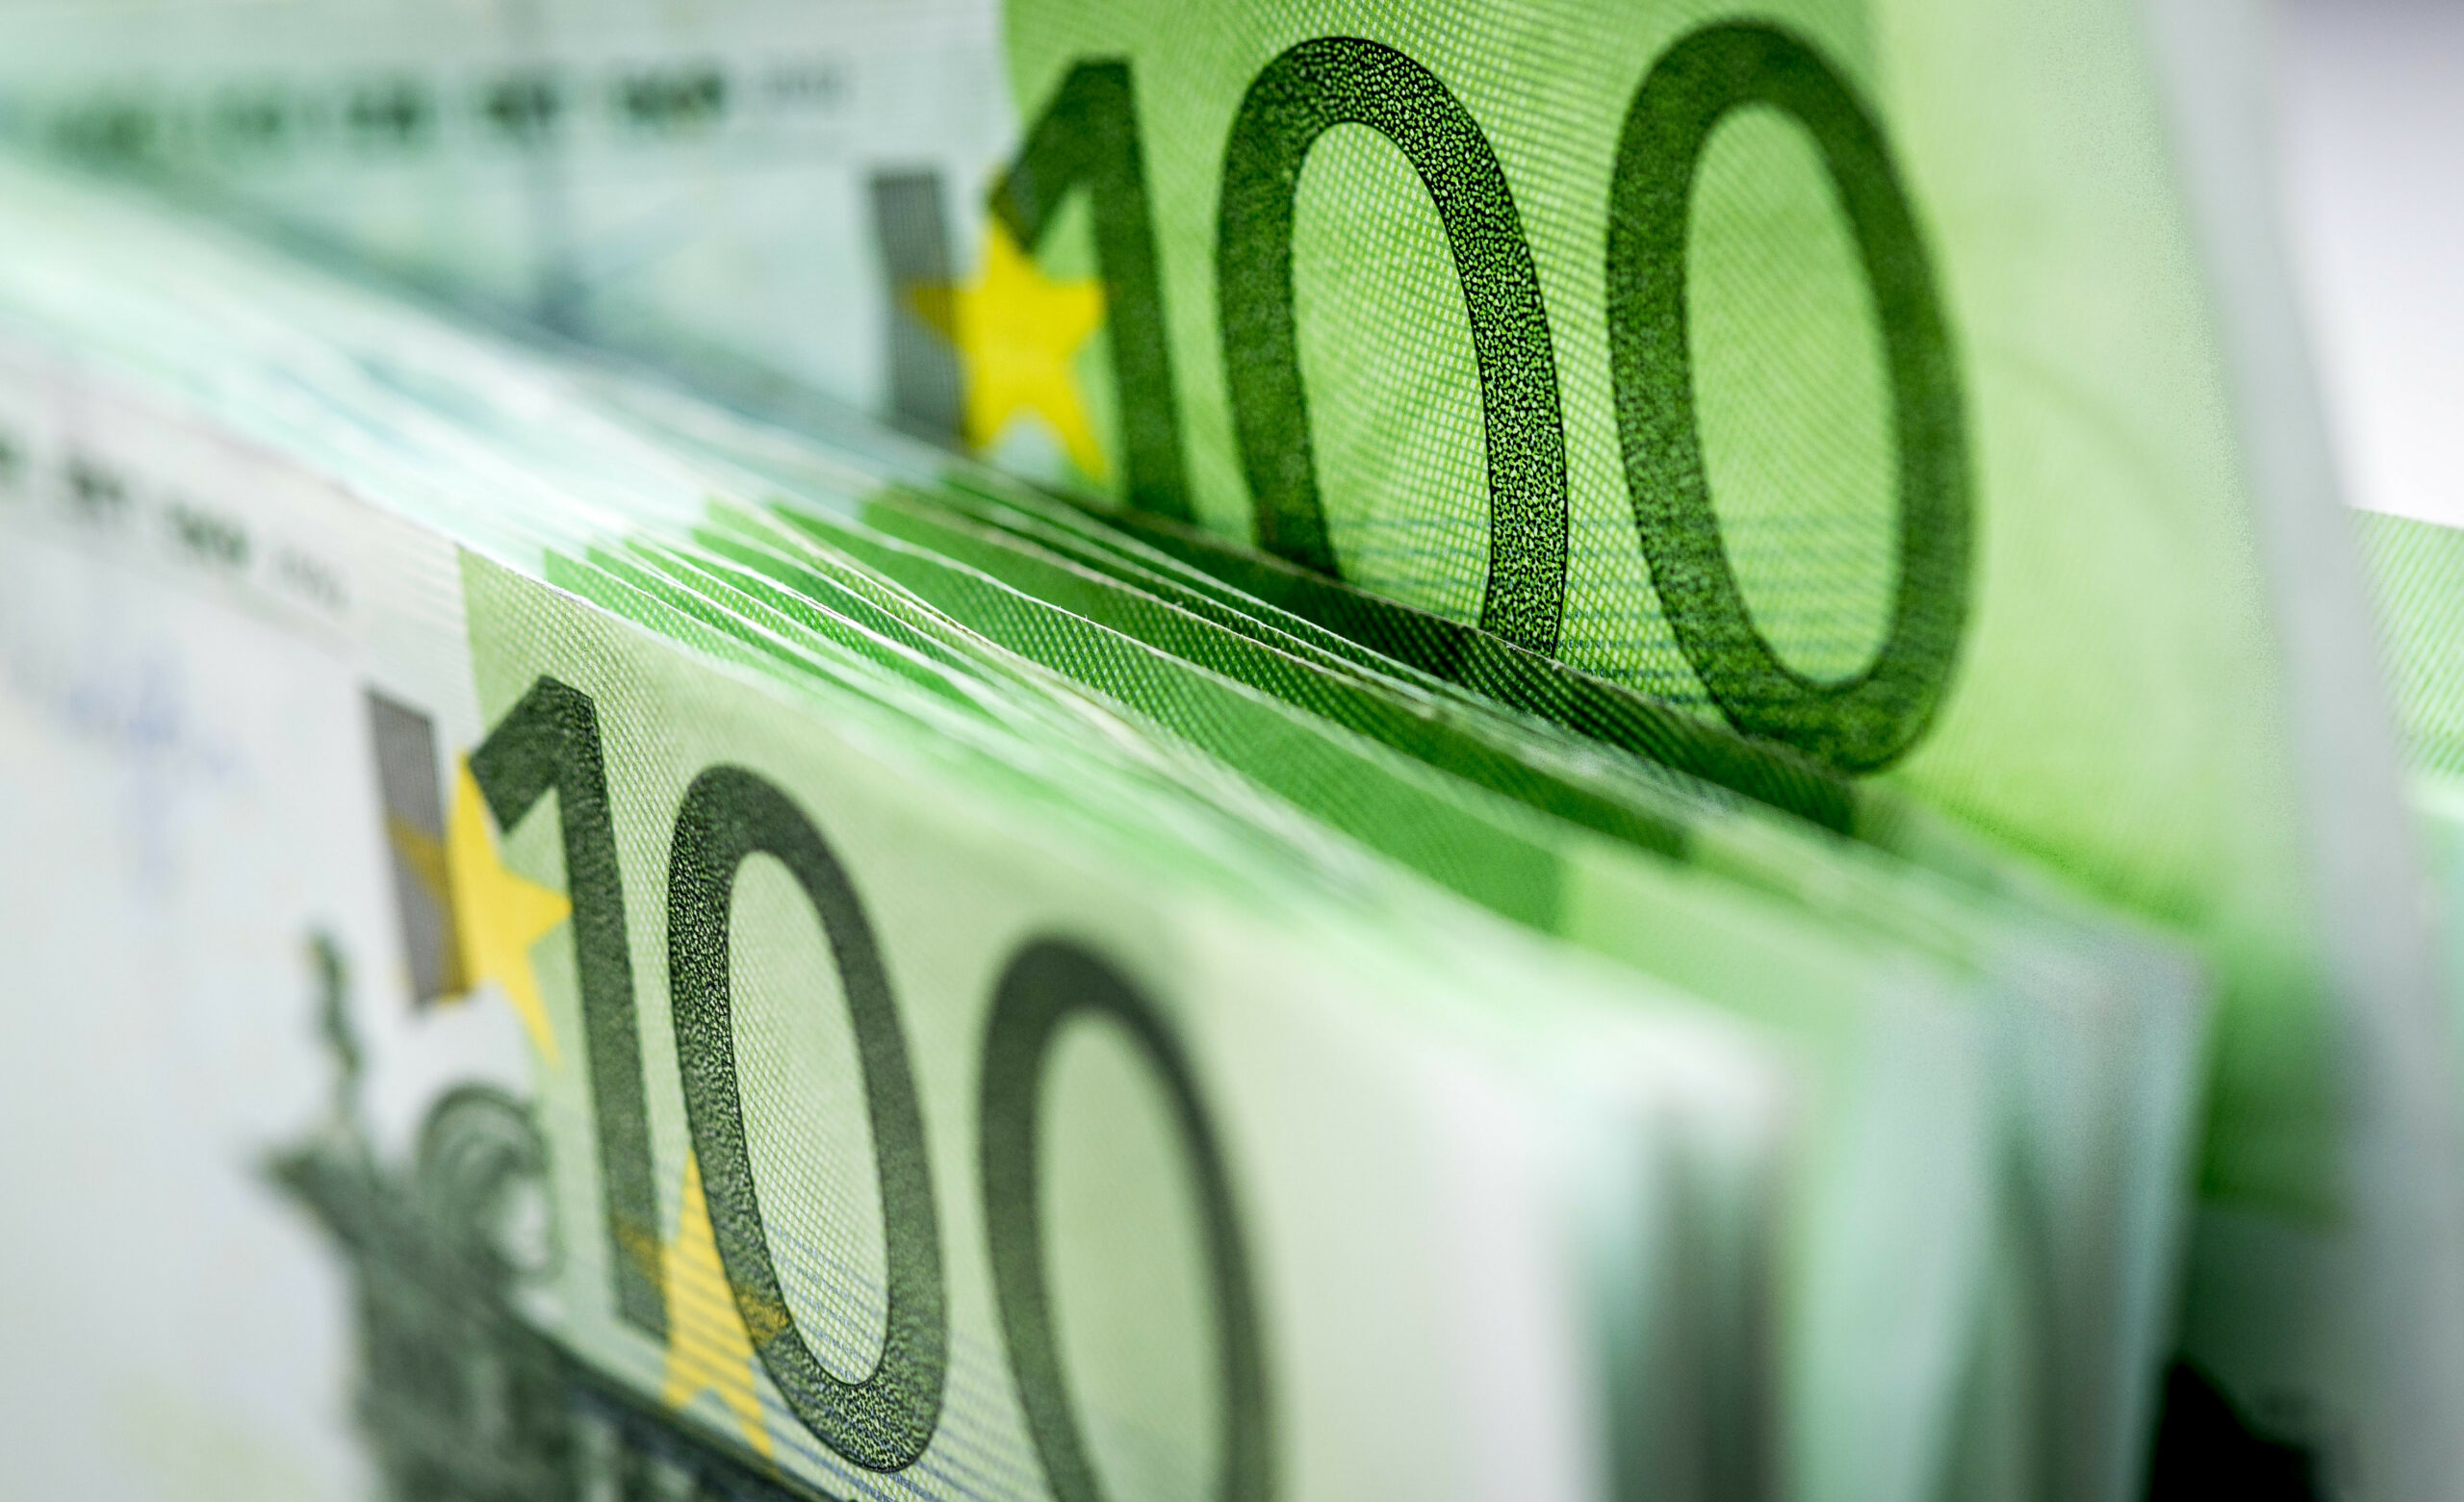 2015-04-22 10:23:16 ILLUSTRATIE - Een stapel van honderd eurobiljetten. ANP XTRA LEX VAN LIESHOUT